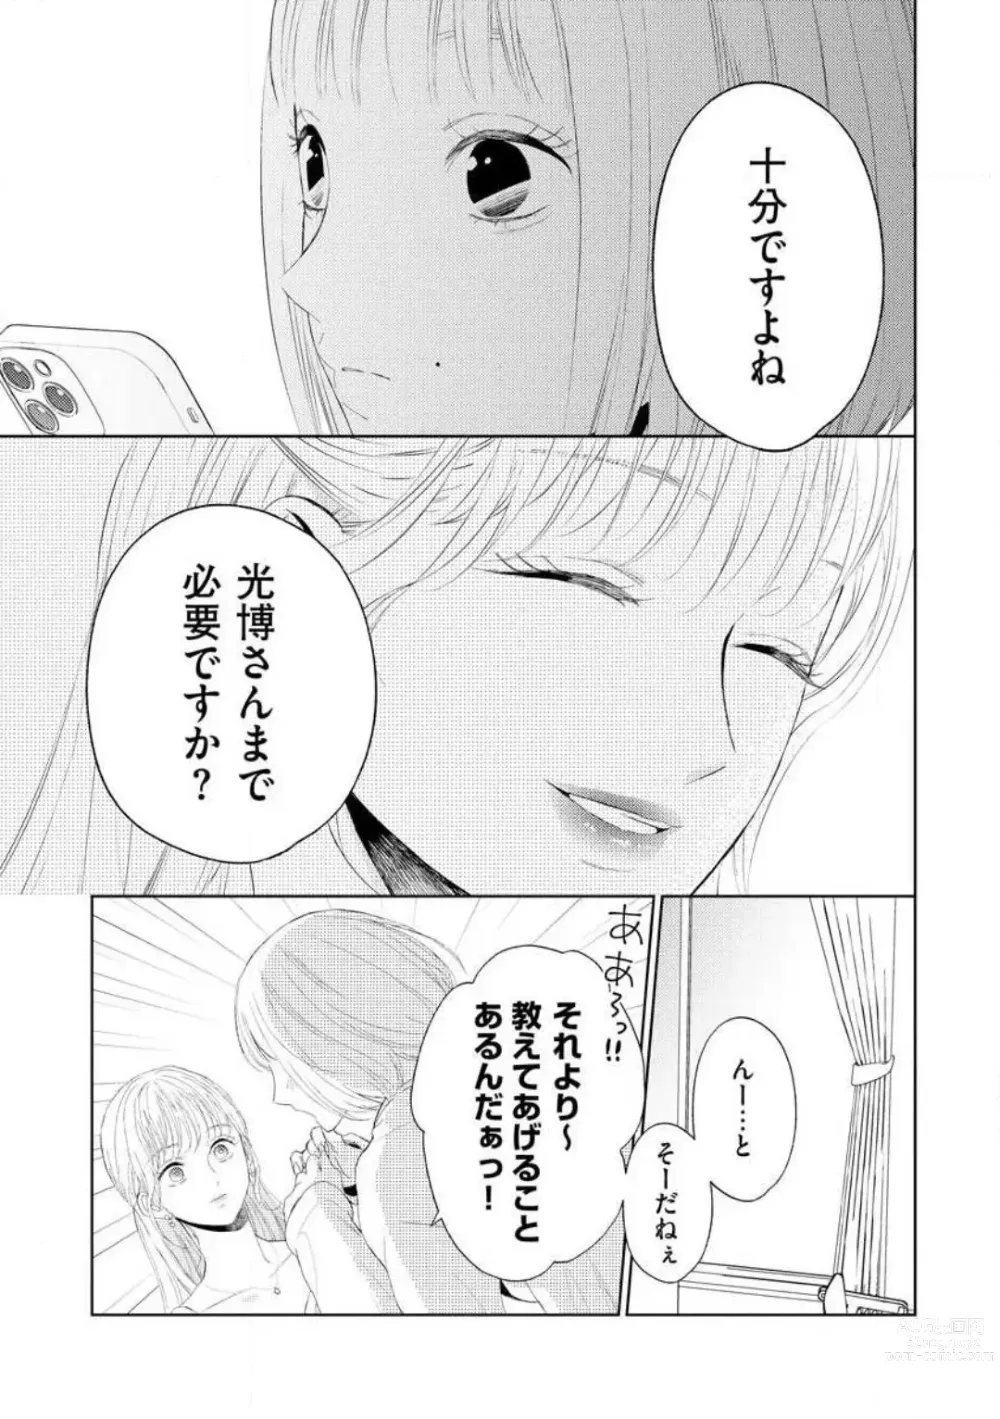 Page 122 of manga 29-sai no Fu Junai 1-5